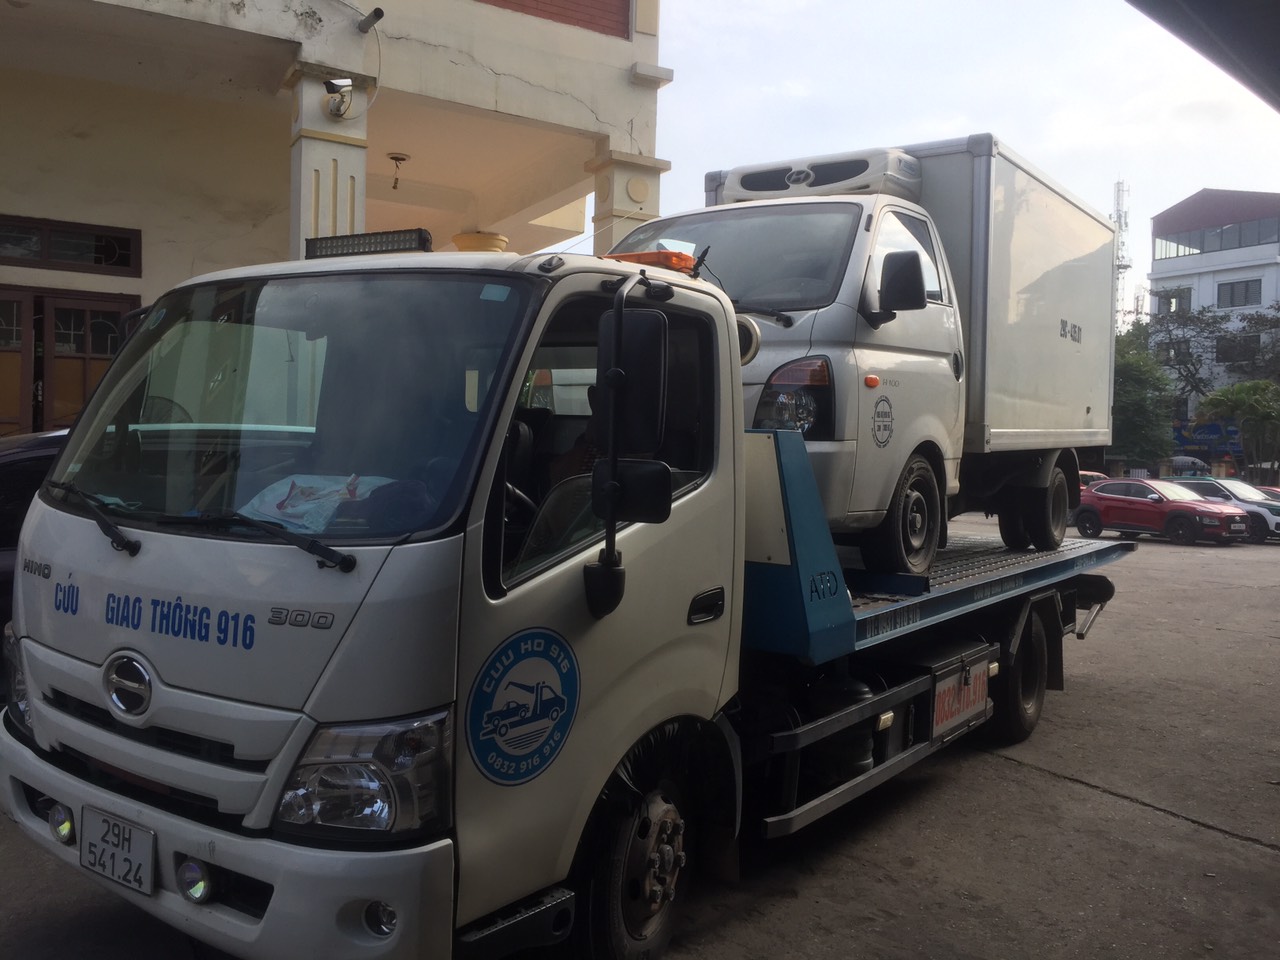 Review dịch vụ cứu hộ xe ở Hà Giang: Giải pháp an toàn trên đường hẻo lánh